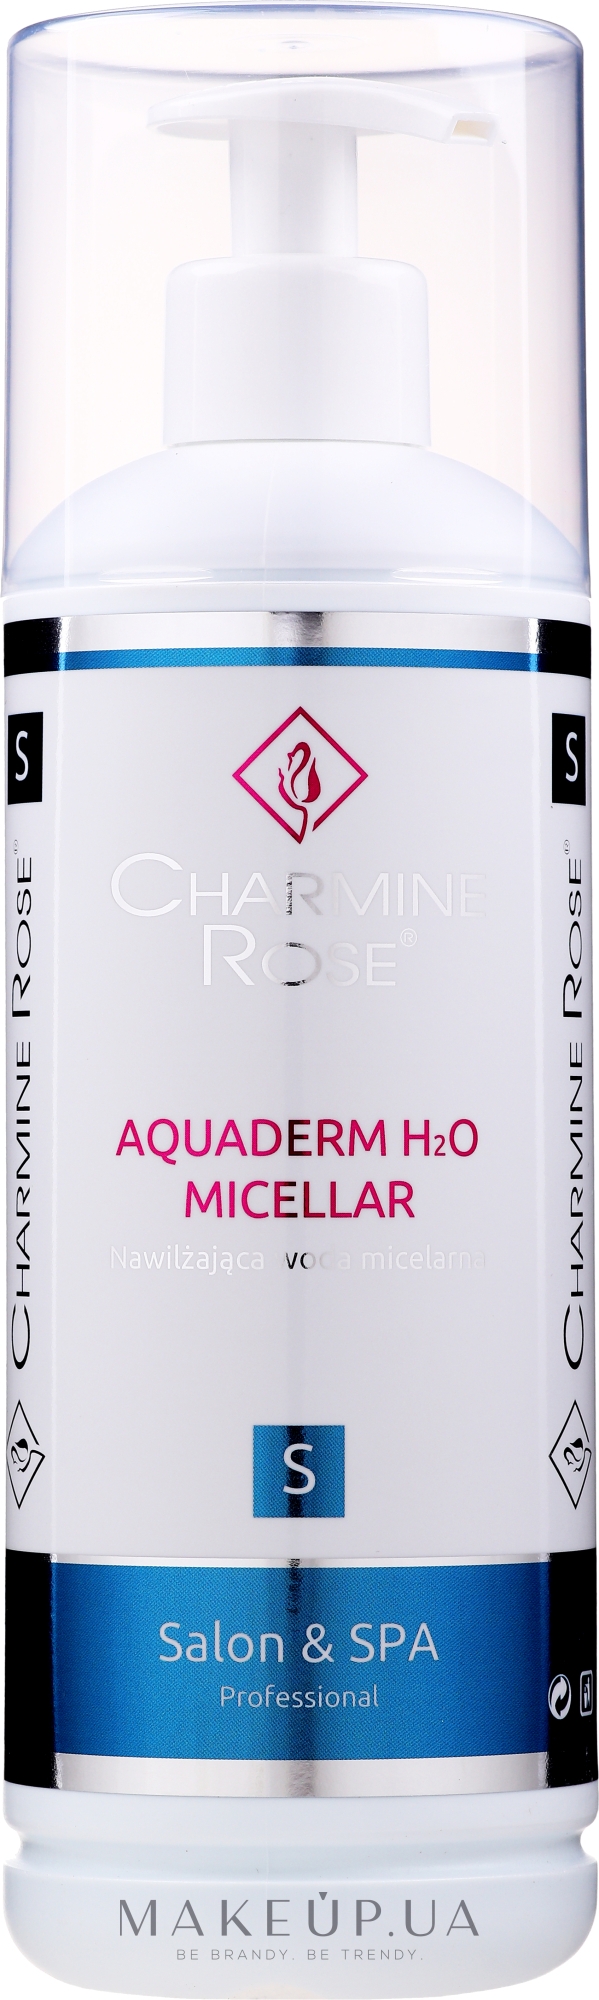 Увлажняющая мицеллярная вода - Charmine Rose Aquaderm H2O Micellar — фото 200ml